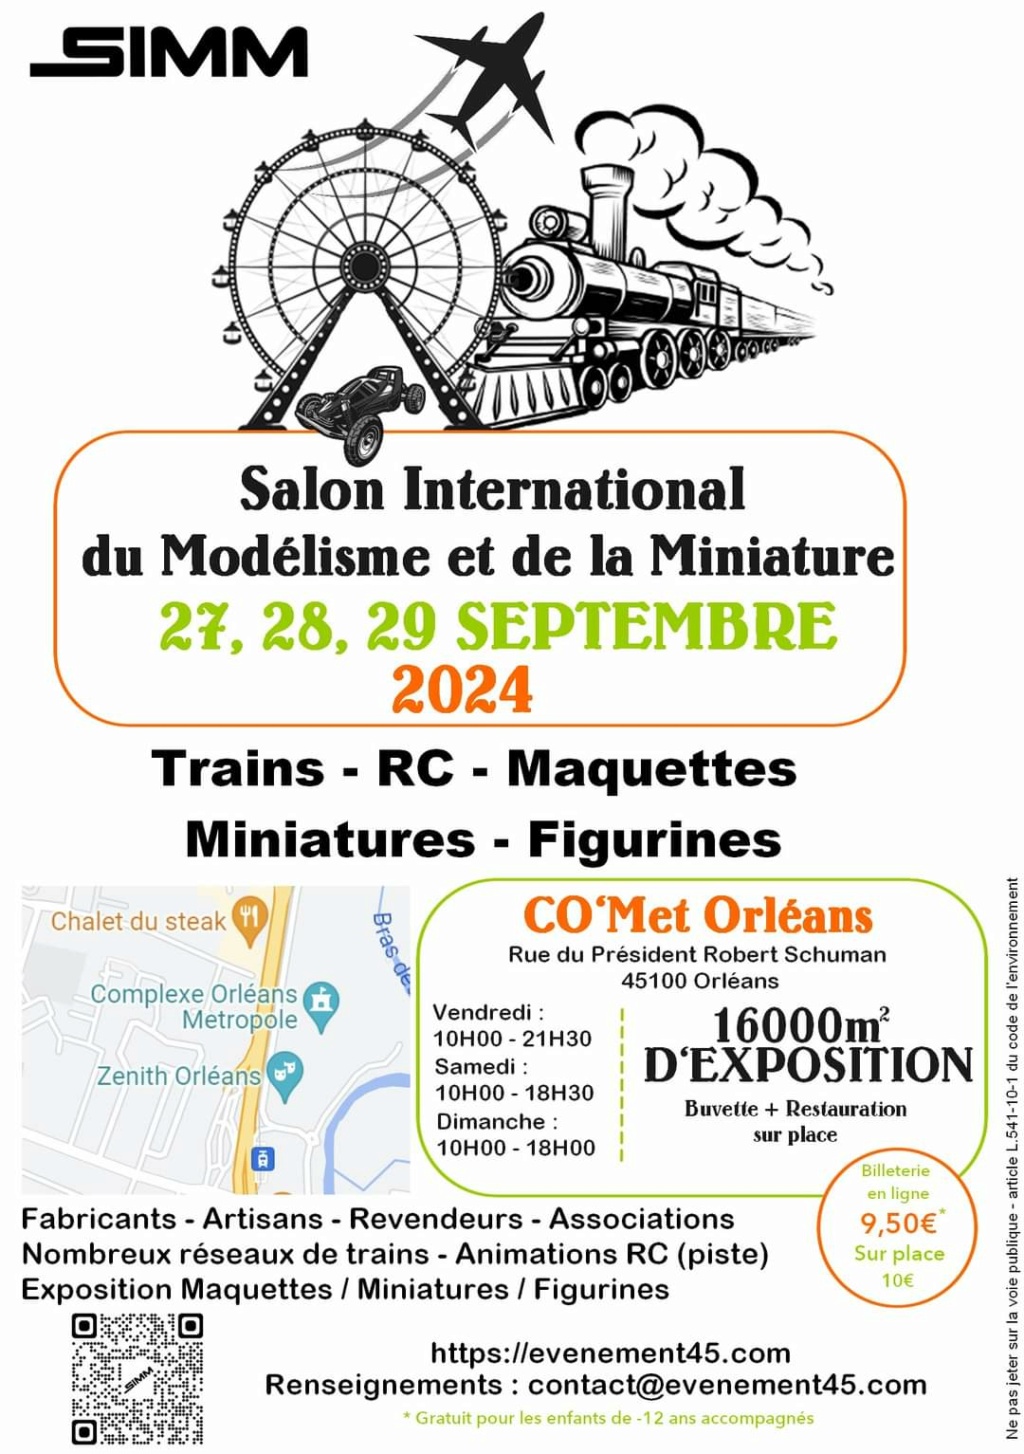 Salon International du Modélisme et de la Miniature (SIMM) - Orléans (35) - 27 au 29 Septembre 2024 Fb_img10